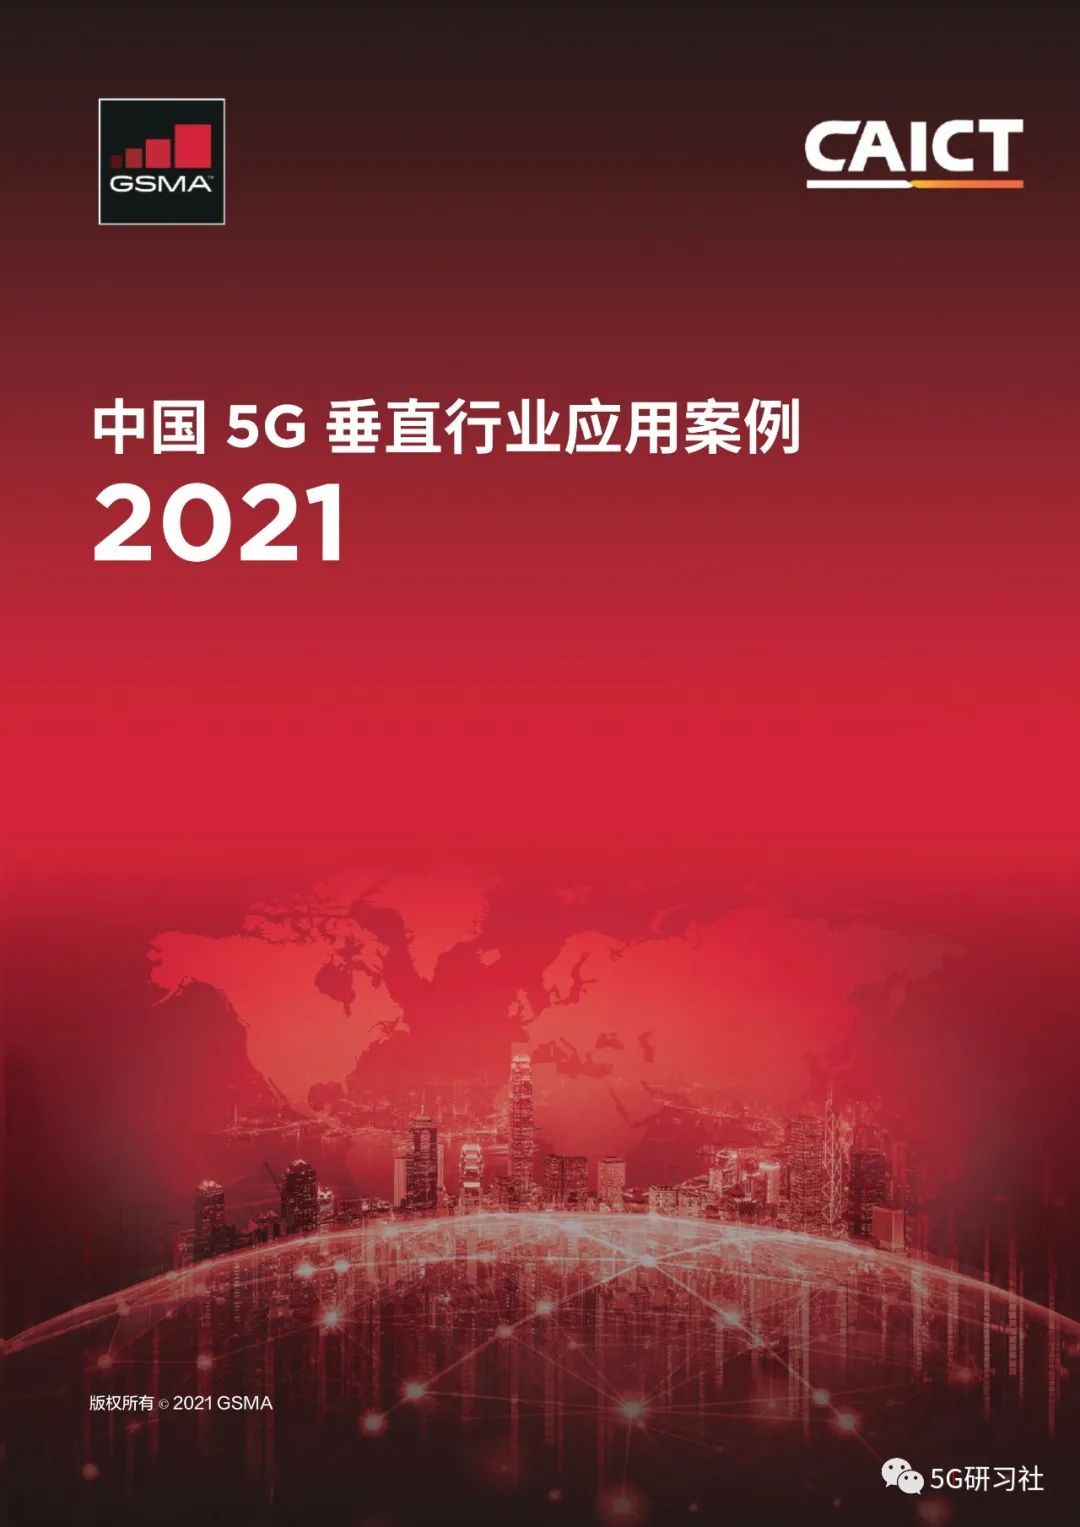 2021 年度 5G 网络建设如火如荼，给生活带来显著影响  第3张